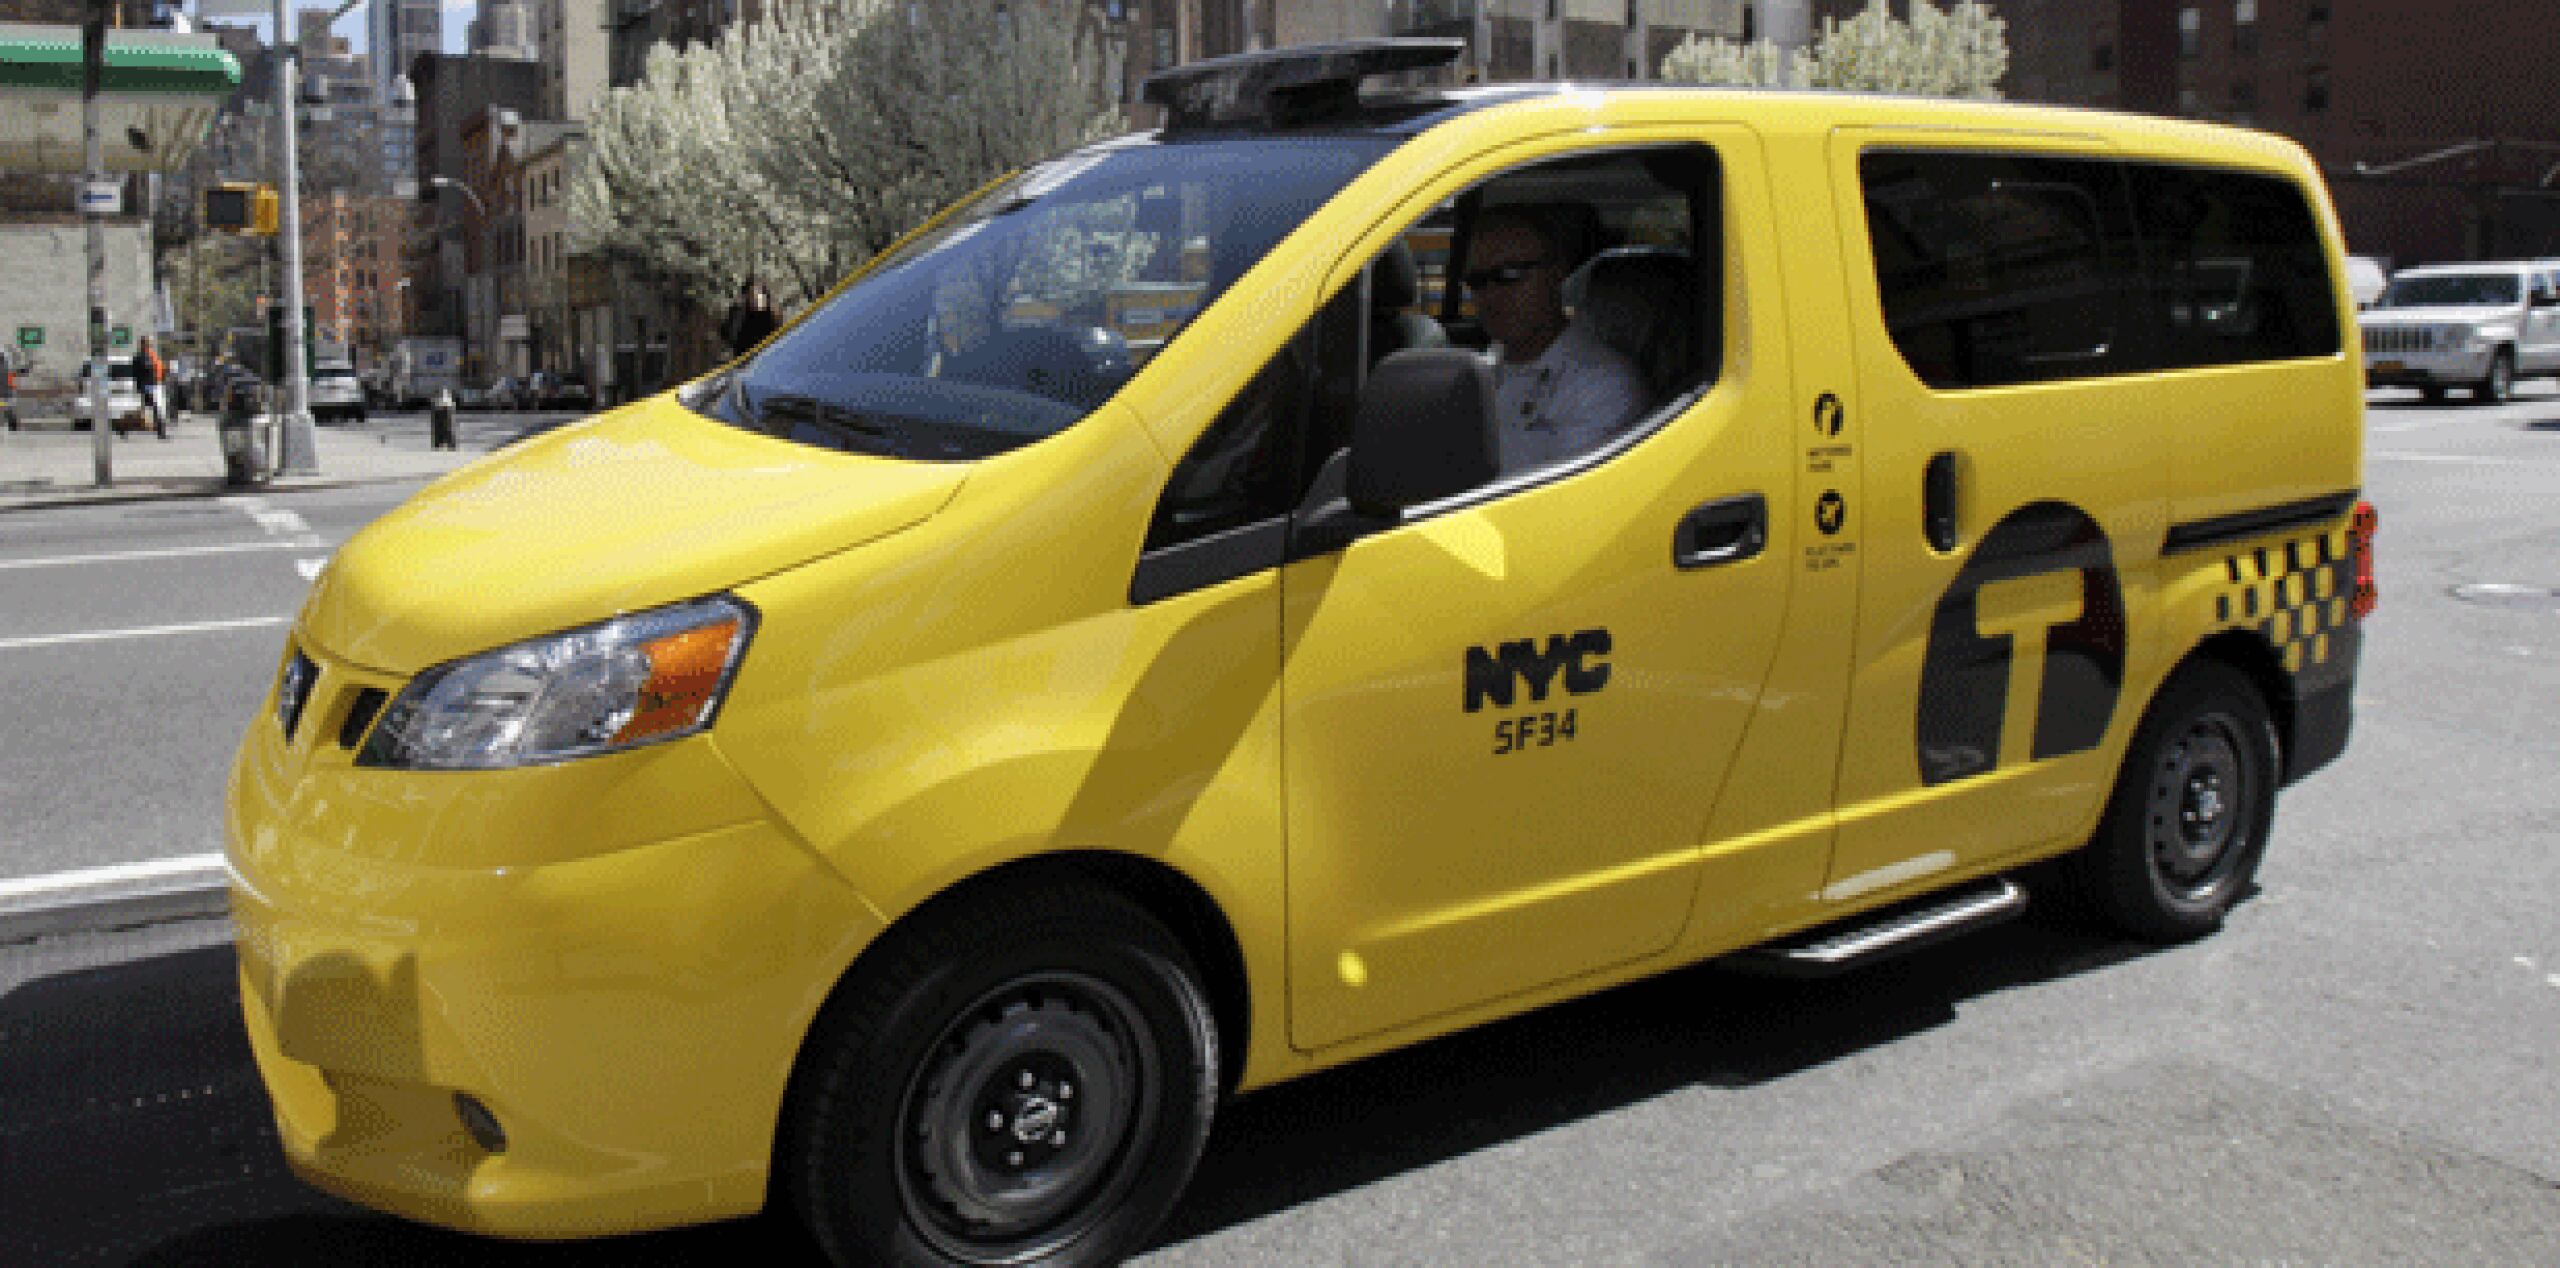 Las autoridades esperan que a la larga hasta el 80 % de los más de 13,000 taxis que circulan por la ciudad sean de este tipo, según The New York Times. (AP)
